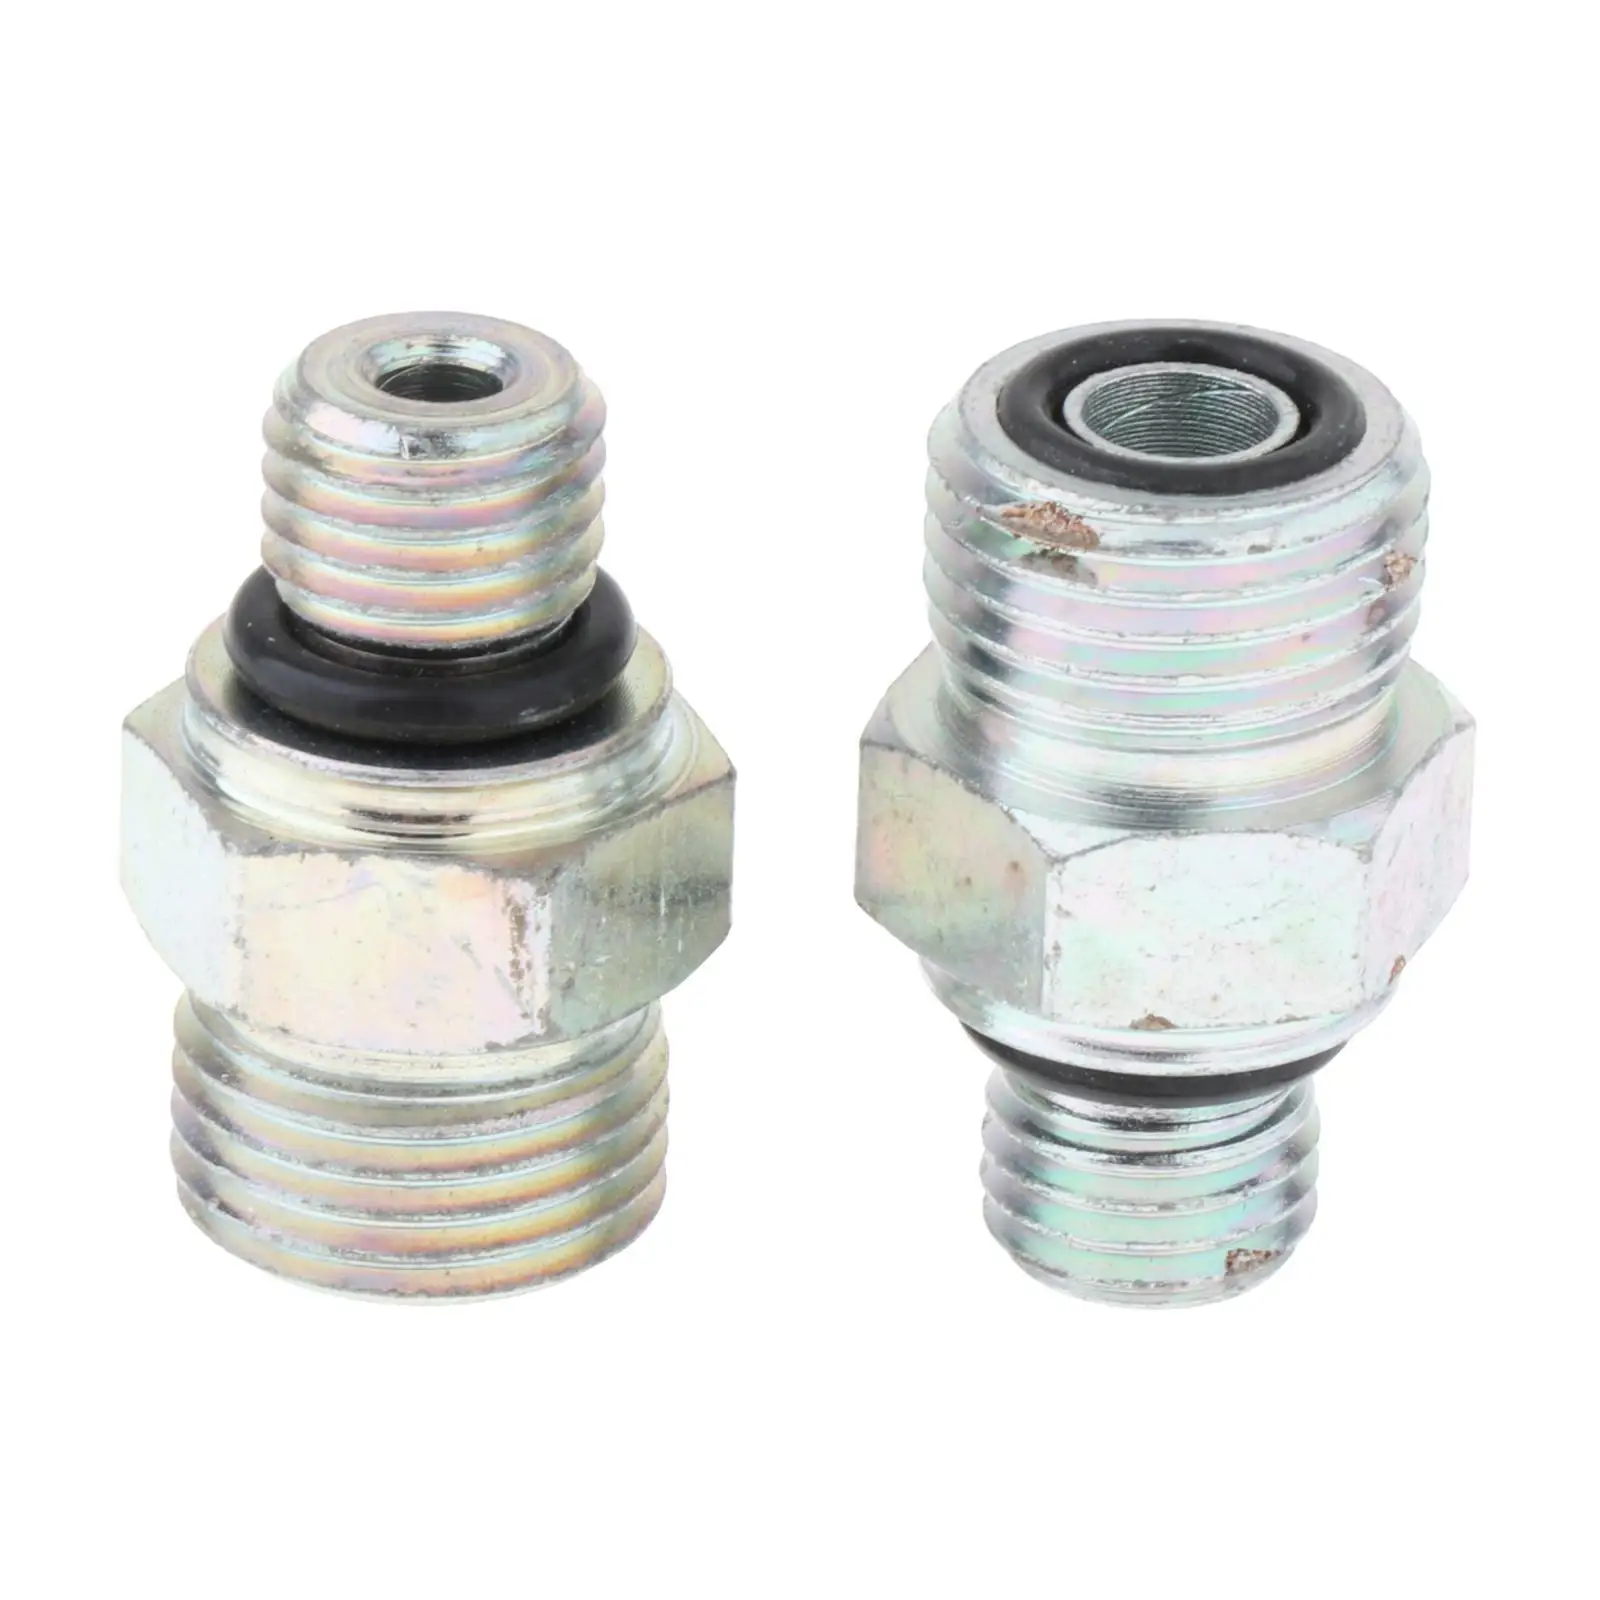 2x Connectors Joints replace for Auto Parts Automotive Engine Parts